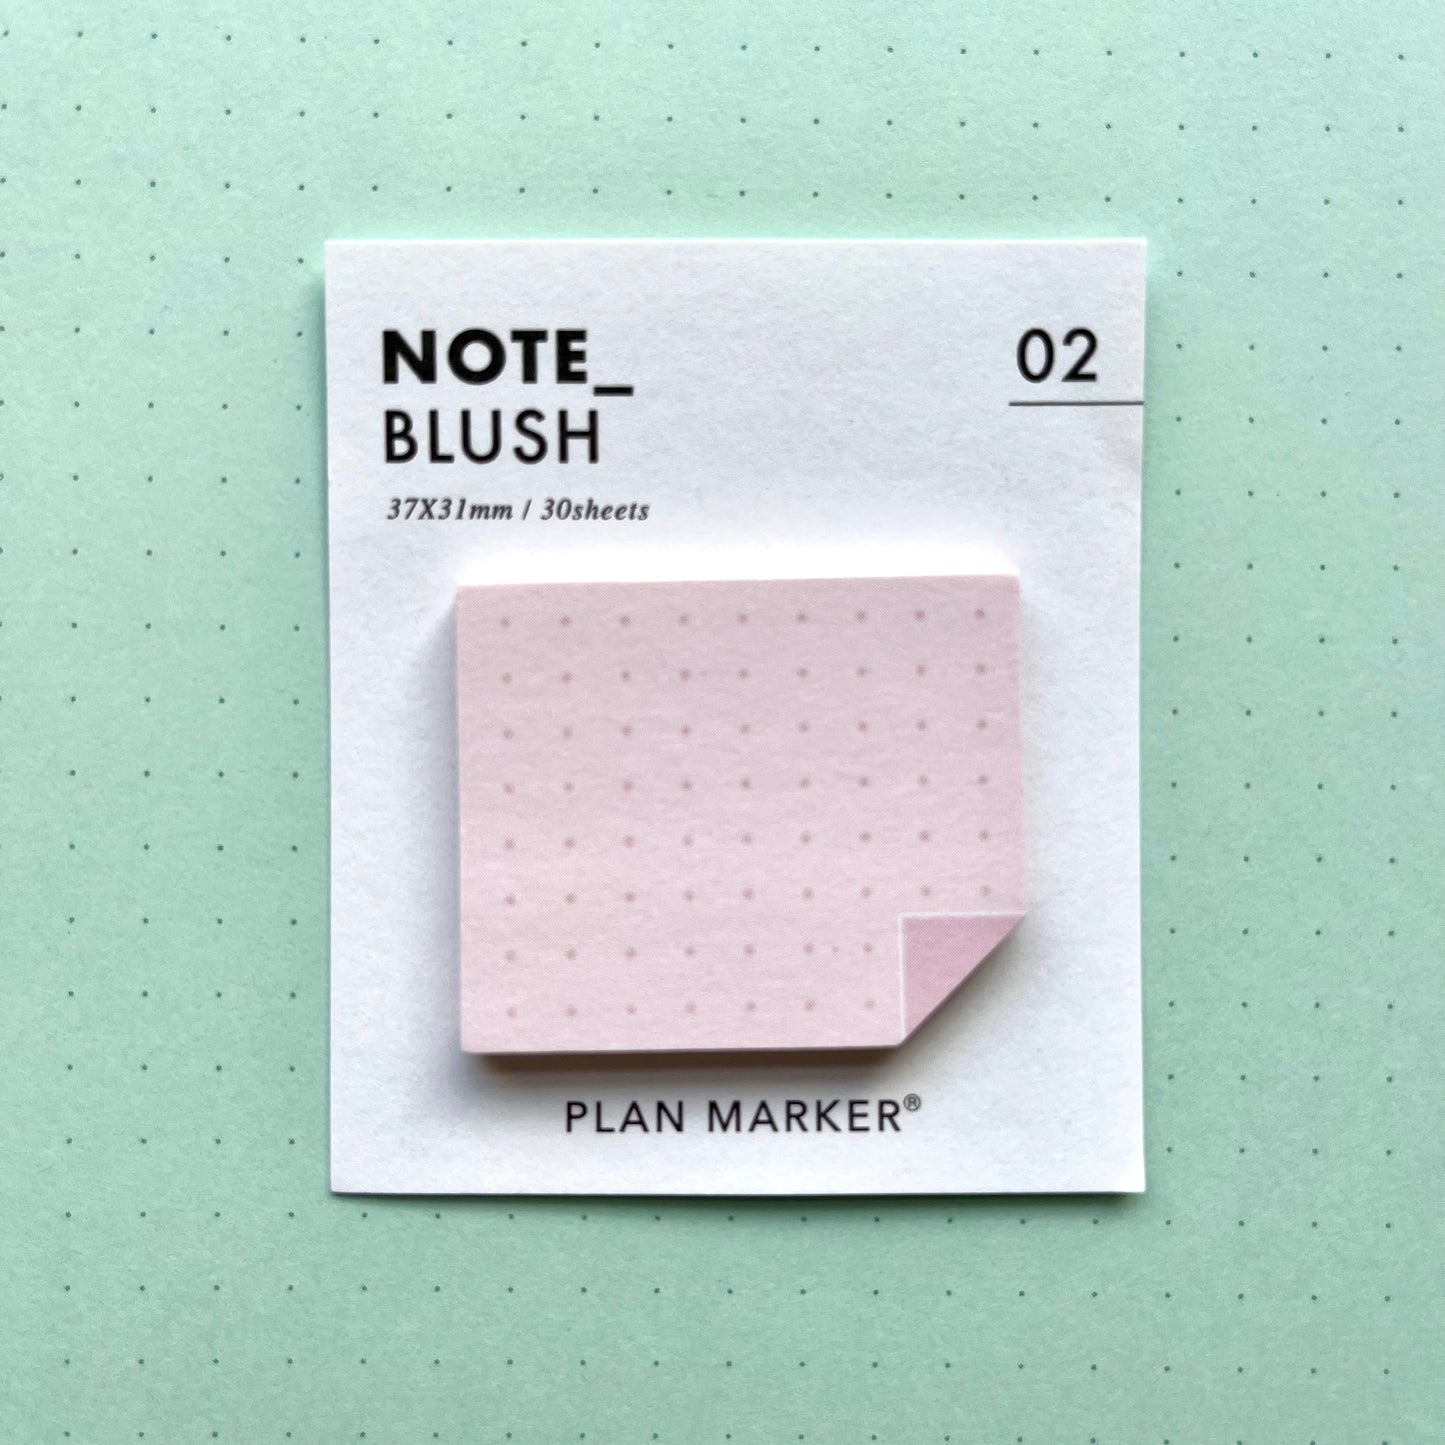 Plan Marker Mini Sticky Notes